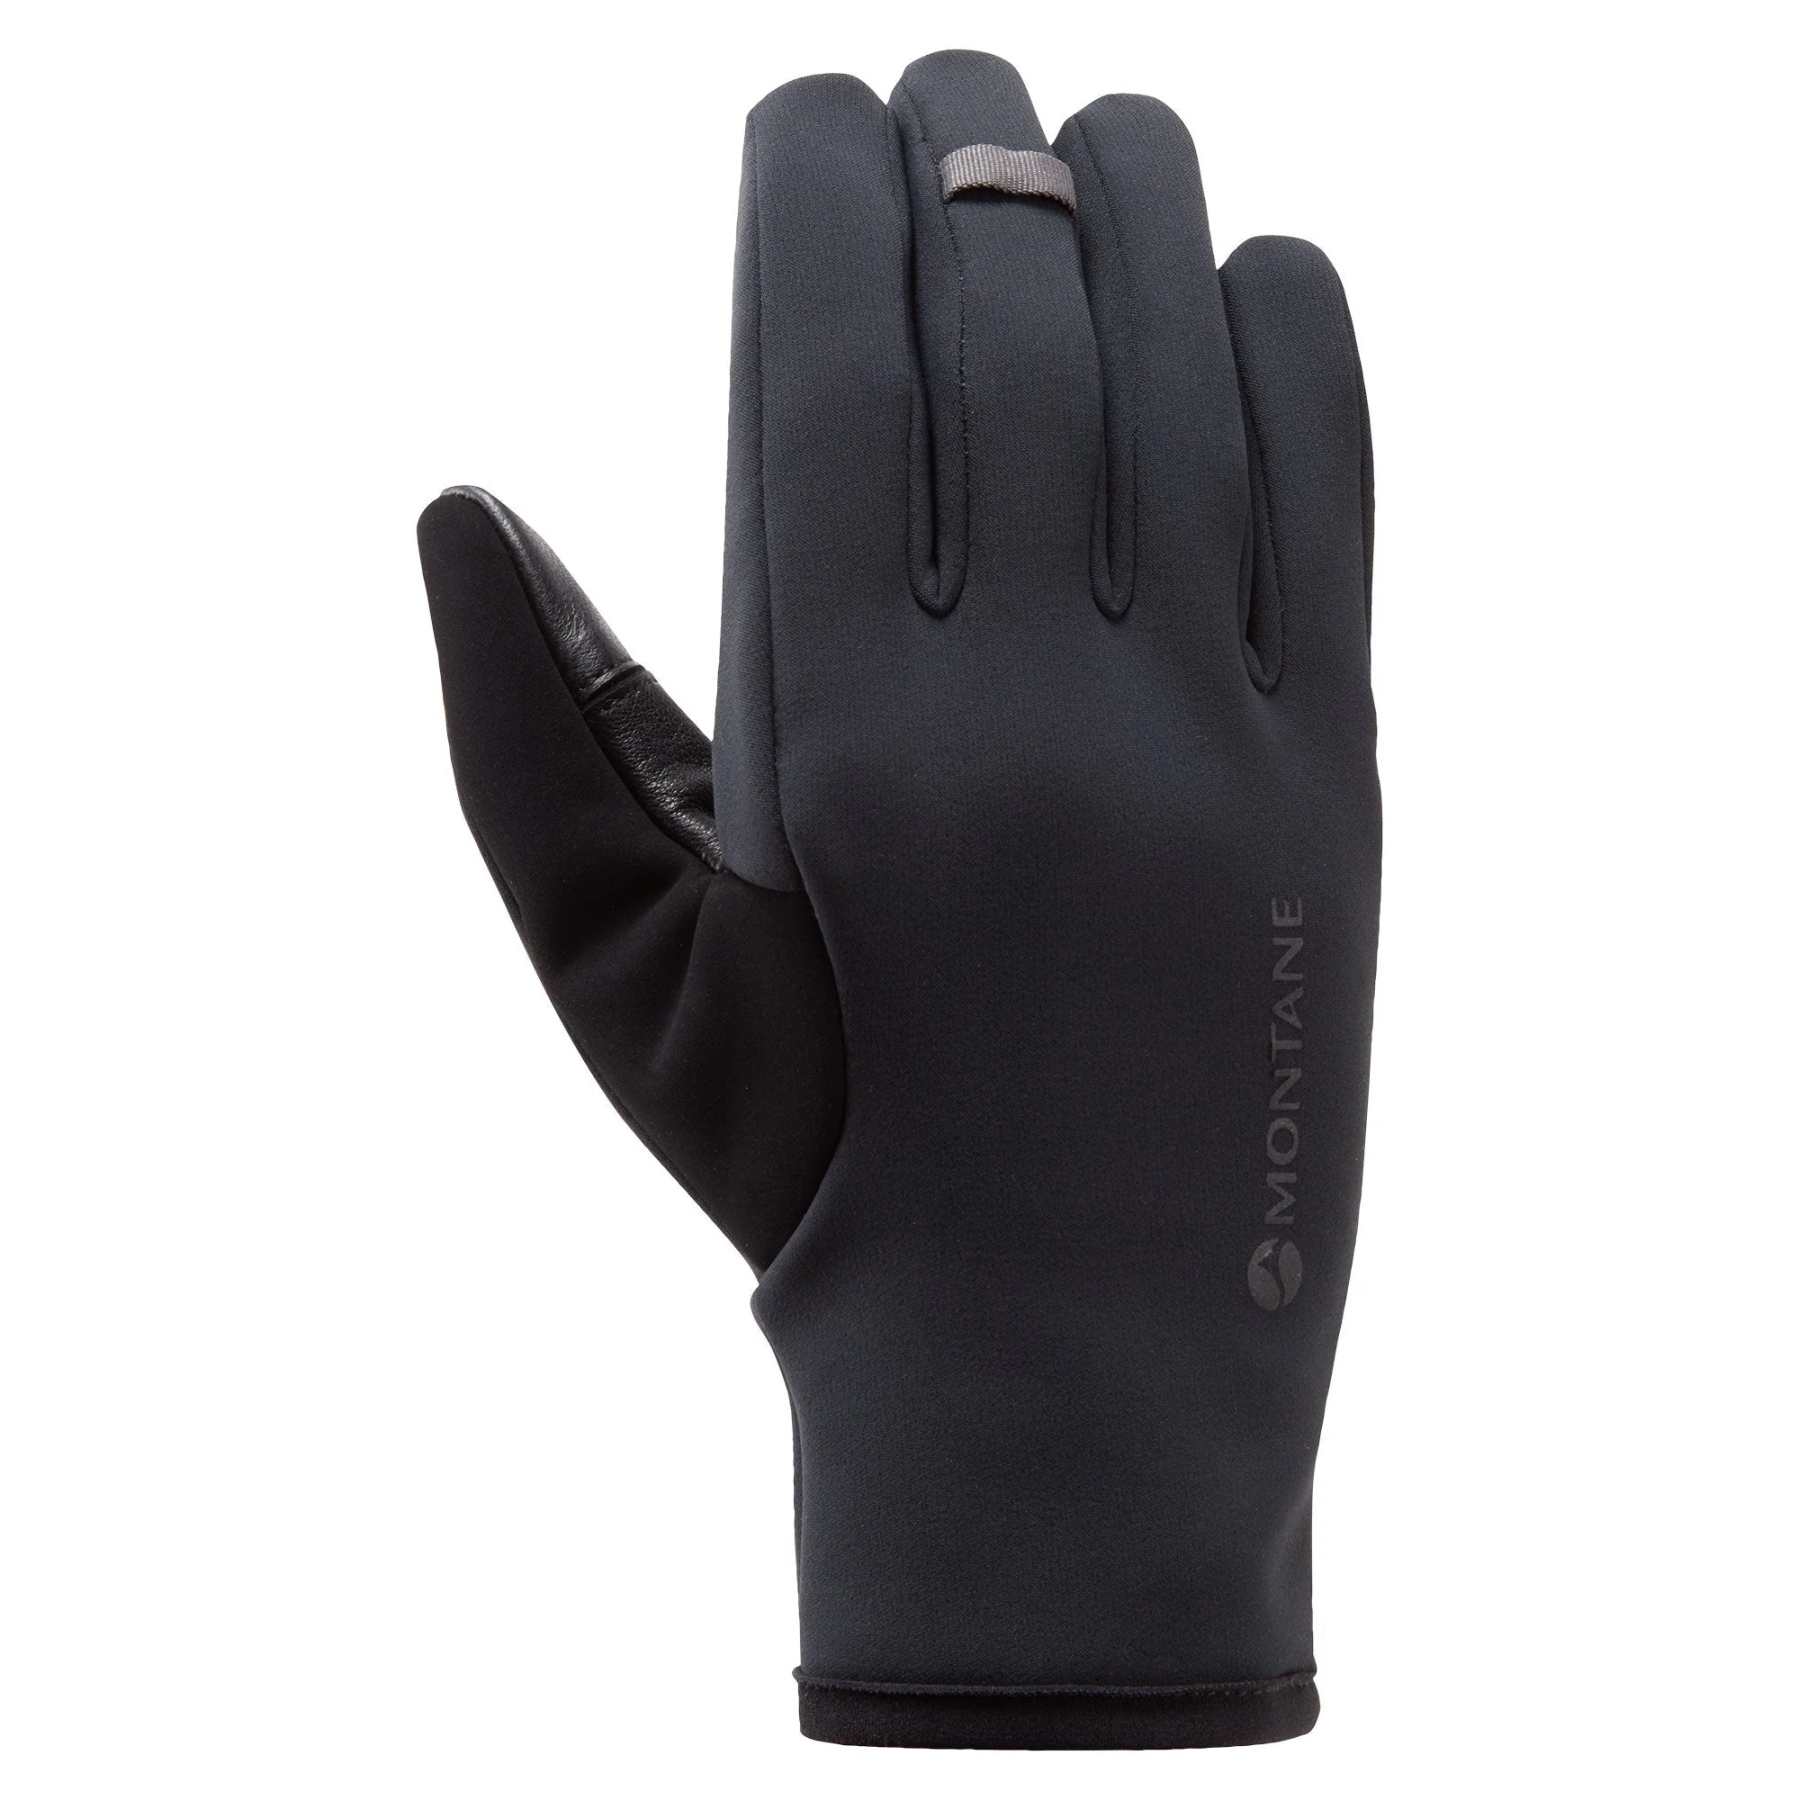 Productfoto van Montane Windjammer Lite Winddichte Handschoenen - zwart